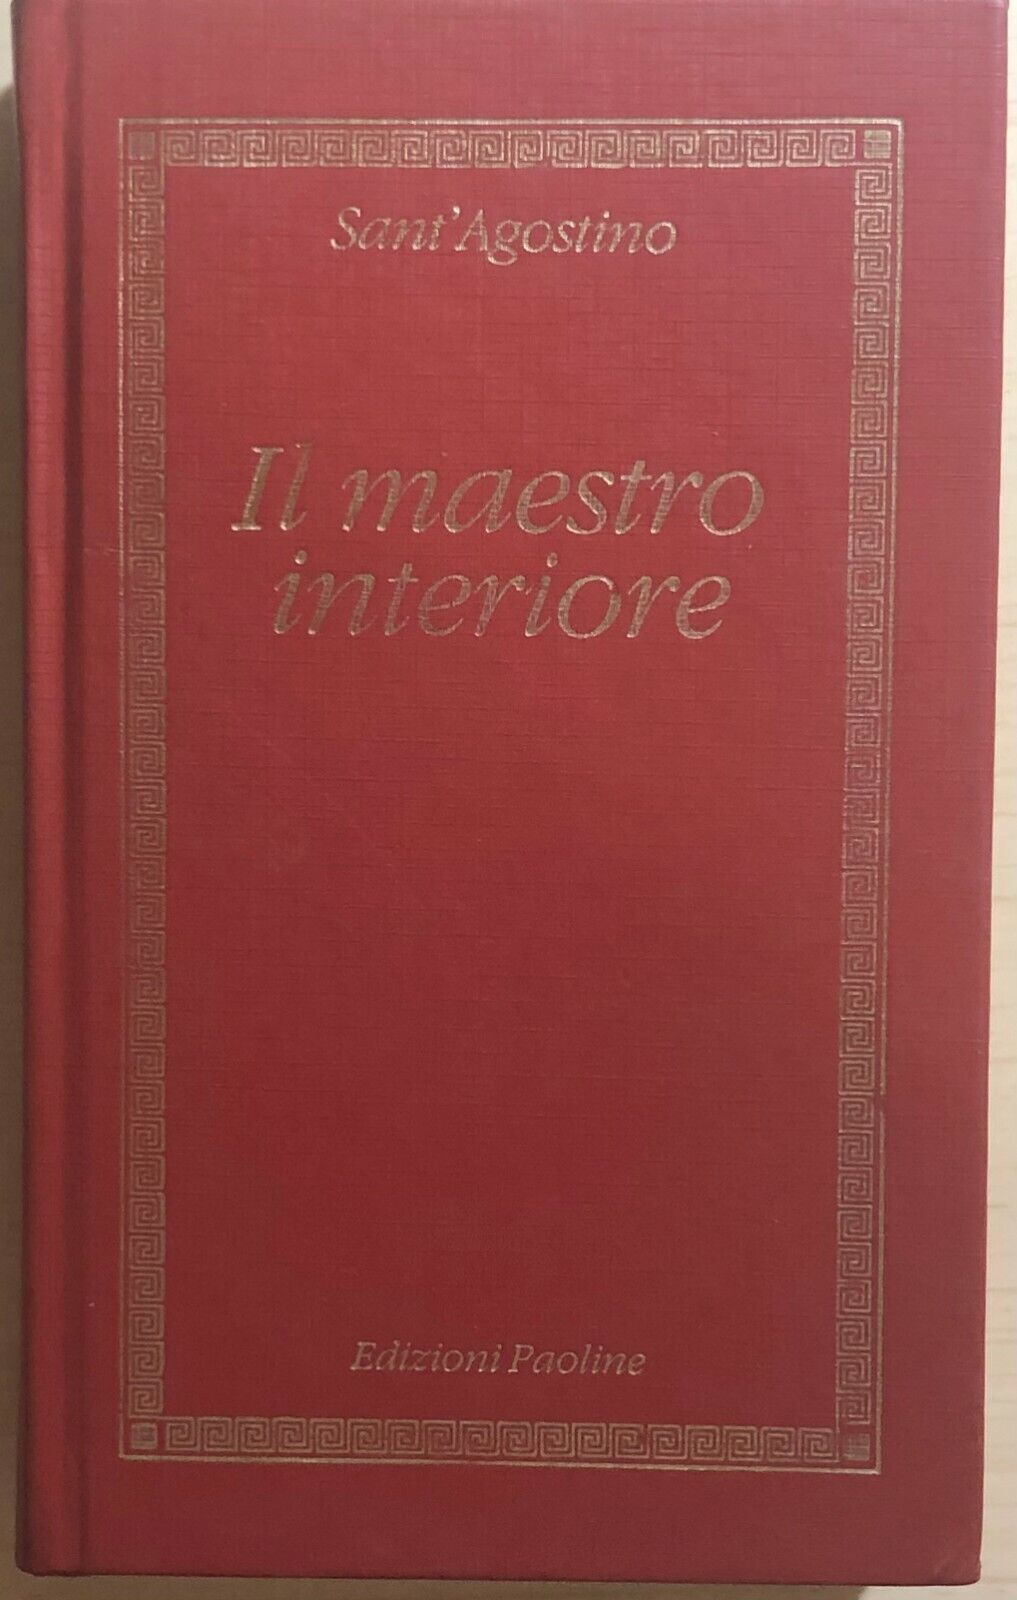 Il maestro interiore di Sant?Agostino, 1987, Edizioni Paoline